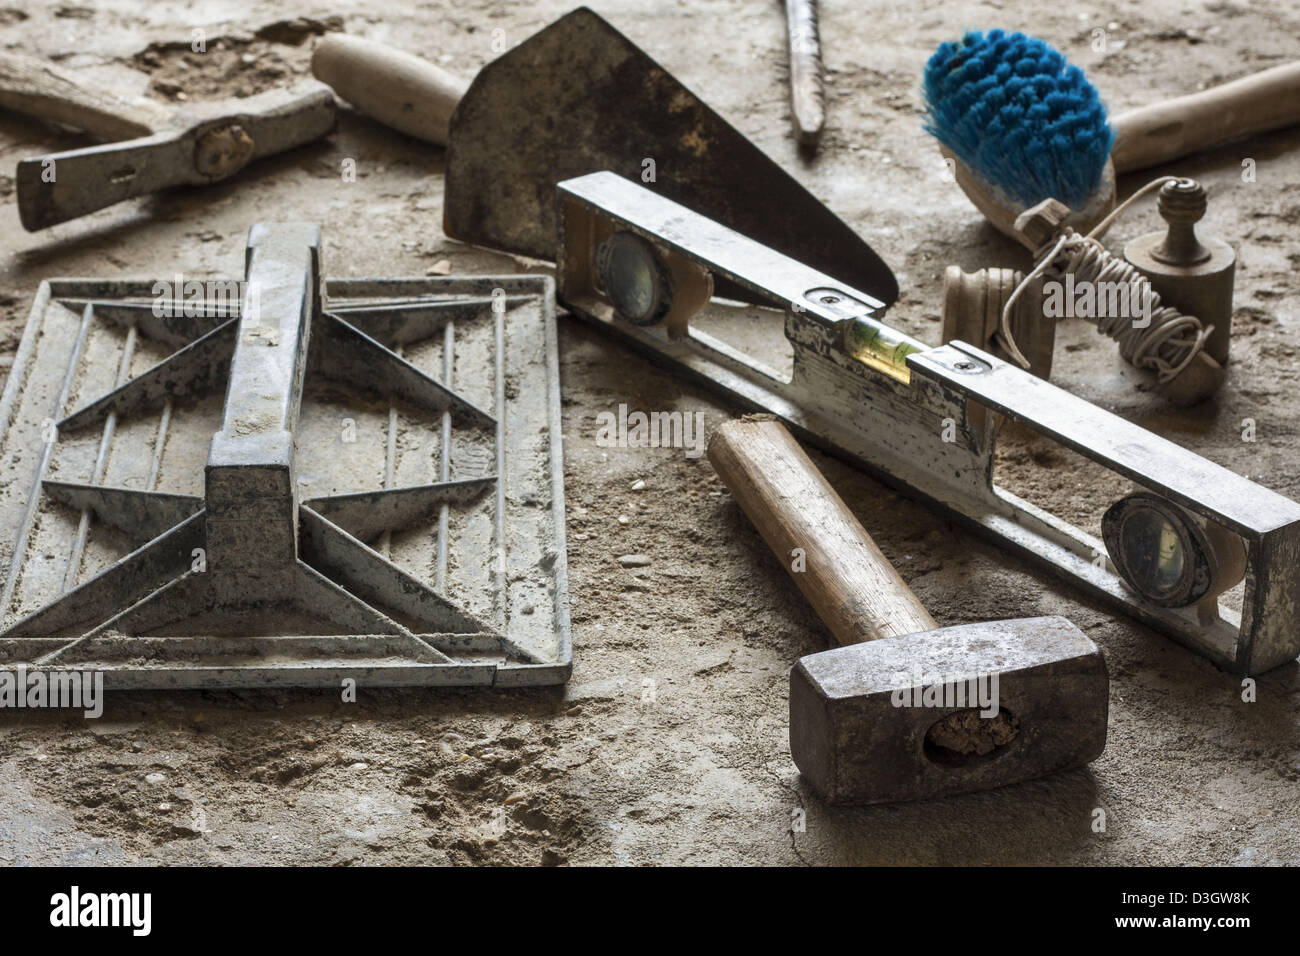 KALMAT - ⚒Herramientas de #albañilería: las imprescindibles que debés tener  ⛏ De la edad de piedra donde ese material fue característico hasta estos  tiempos, las herramientas de albañilería han sido vitales para